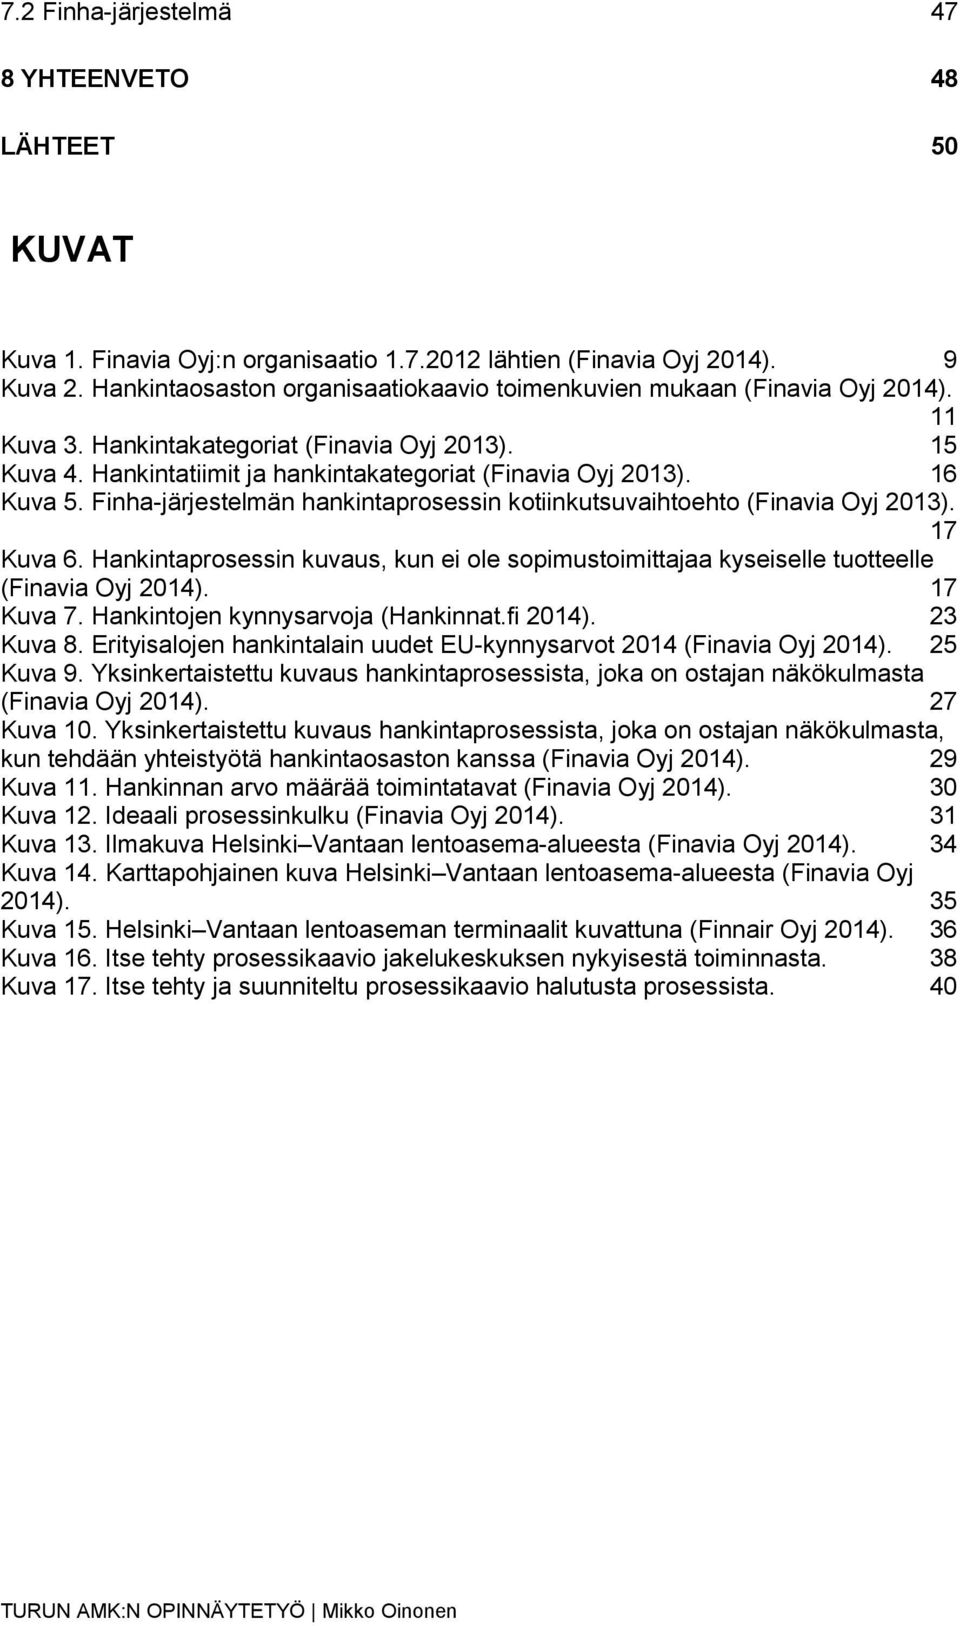 16 Kuva 5. Finha-järjestelmän hankintaprosessin kotiinkutsuvaihtoehto (Finavia Oyj 2013). 17 Kuva 6. Hankintaprosessin kuvaus, kun ei ole sopimustoimittajaa kyseiselle tuotteelle (Finavia Oyj 2014).